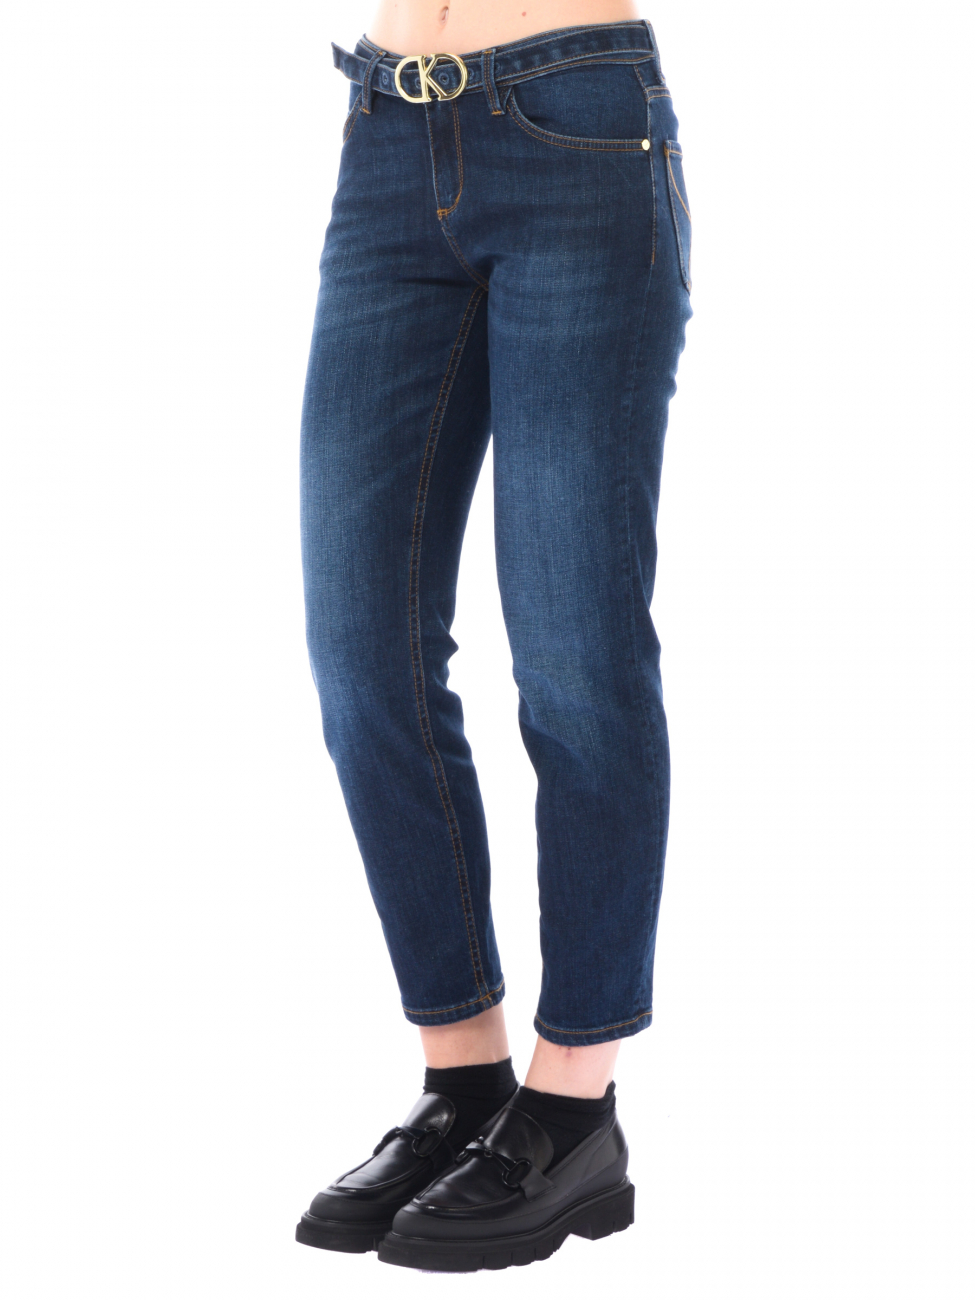 jeans da donna Kaos cinque tasche con cintura